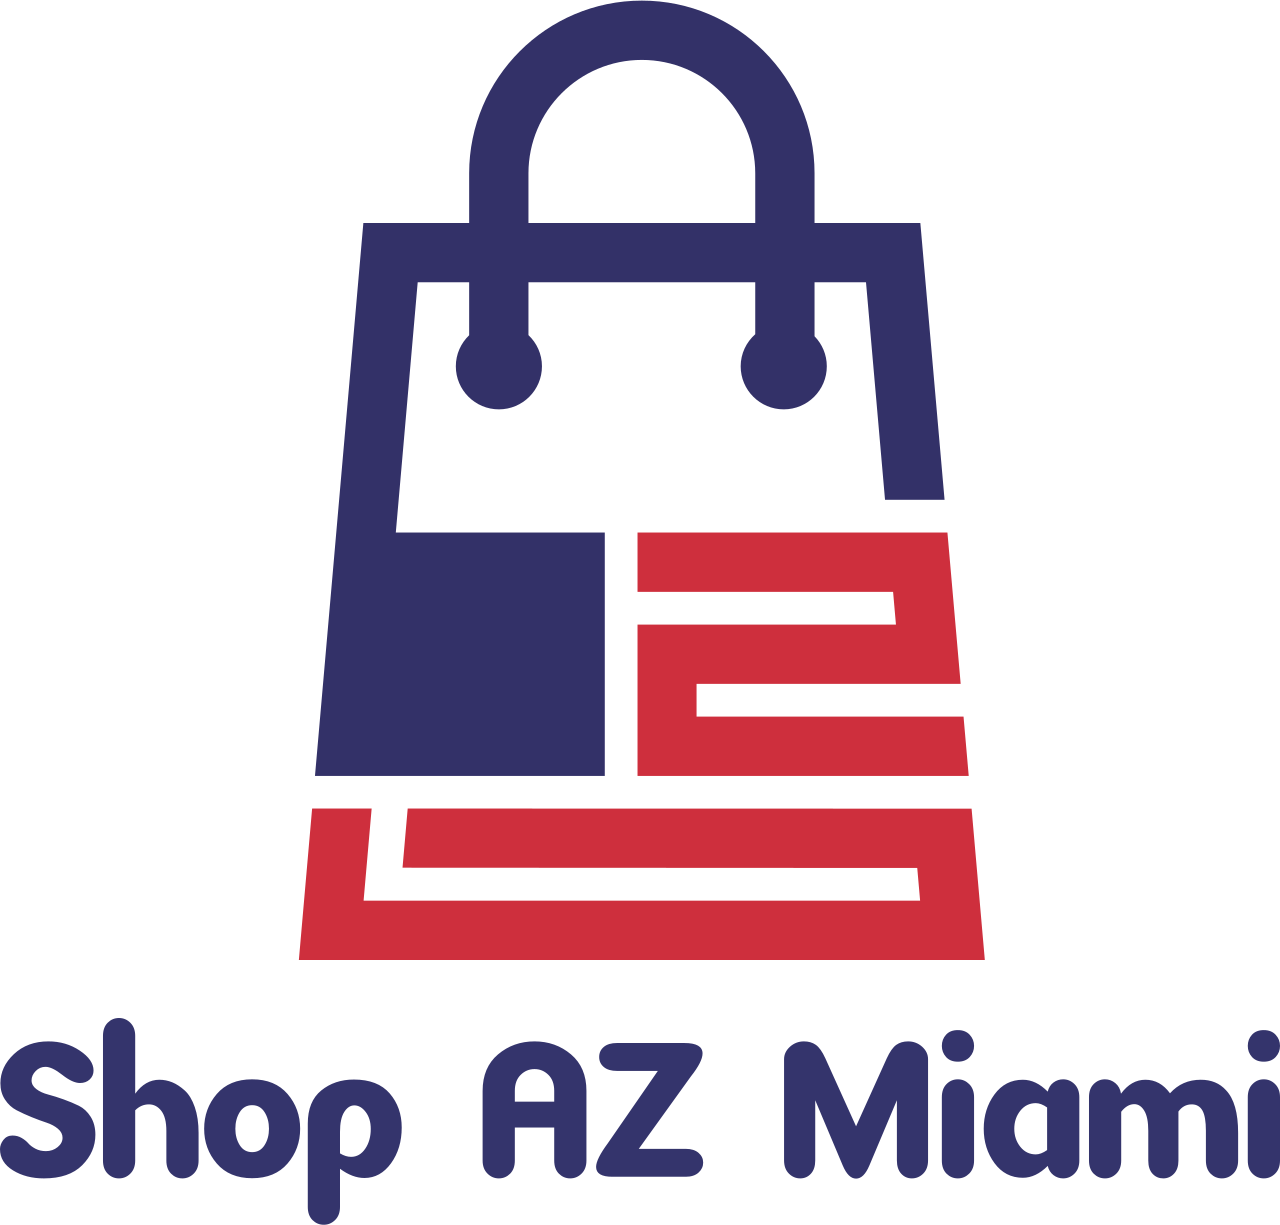 Shop AZ Miami's web page